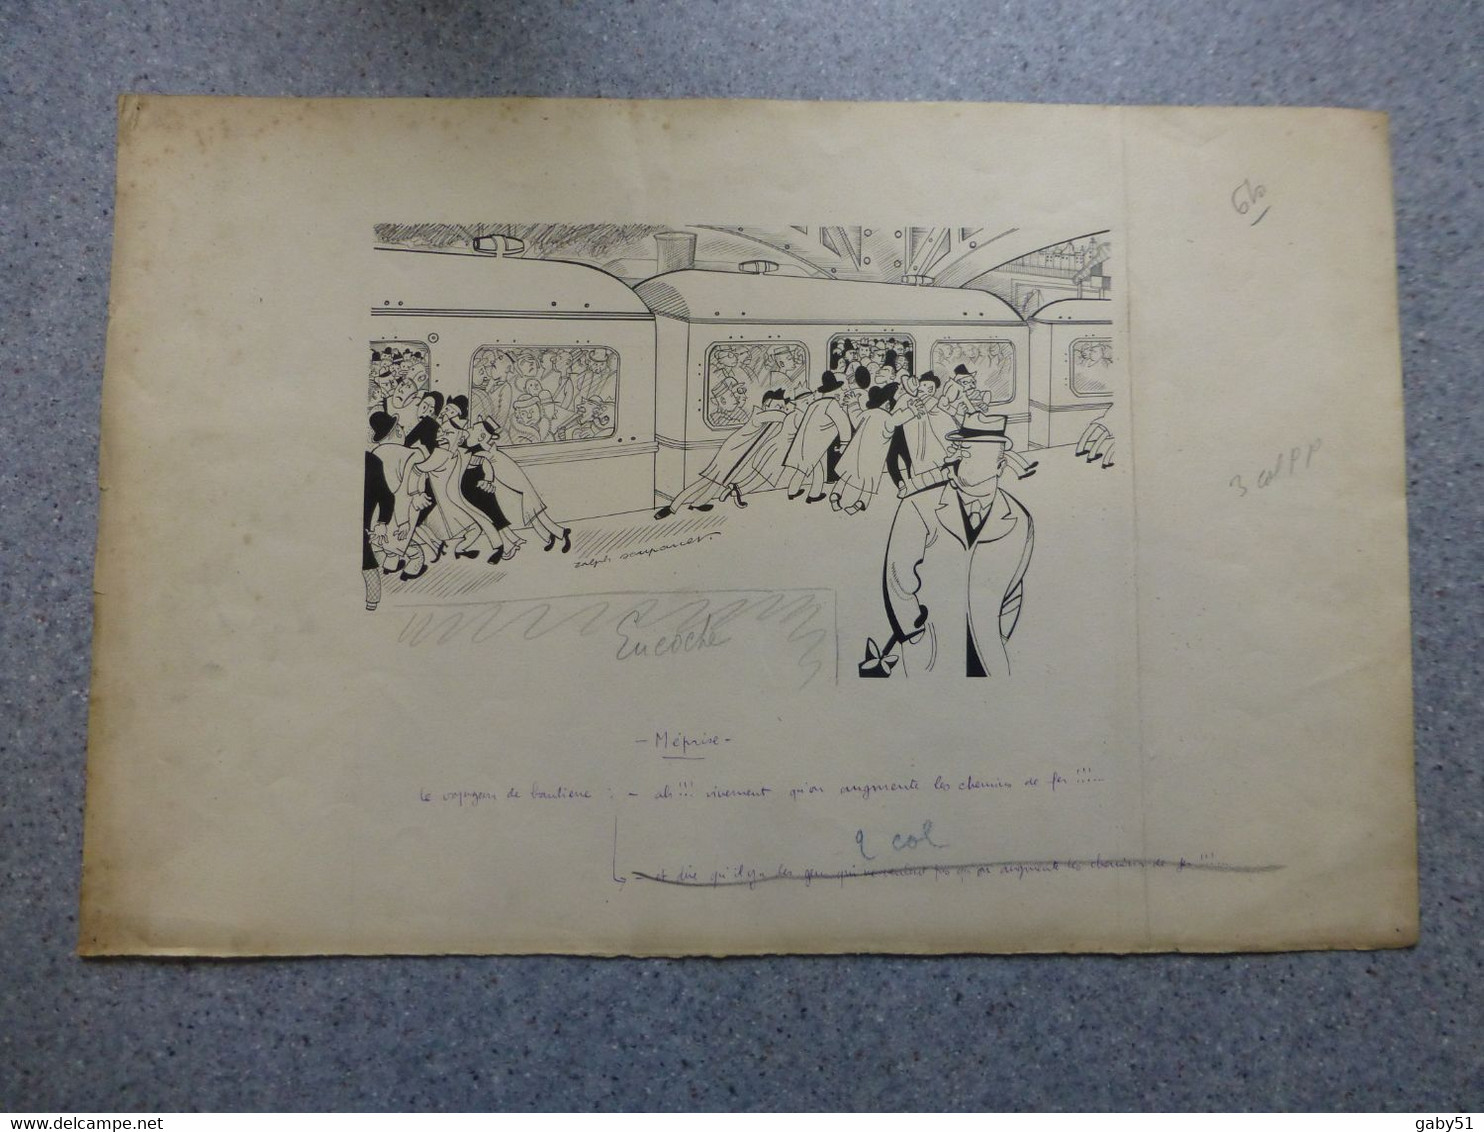 Dans Le Métro, Méprise, Dessin Original De Ralph Soupault, Signé, Vers 1925, Encre De Chine, UNIQUE ; G 04 - Dibujos